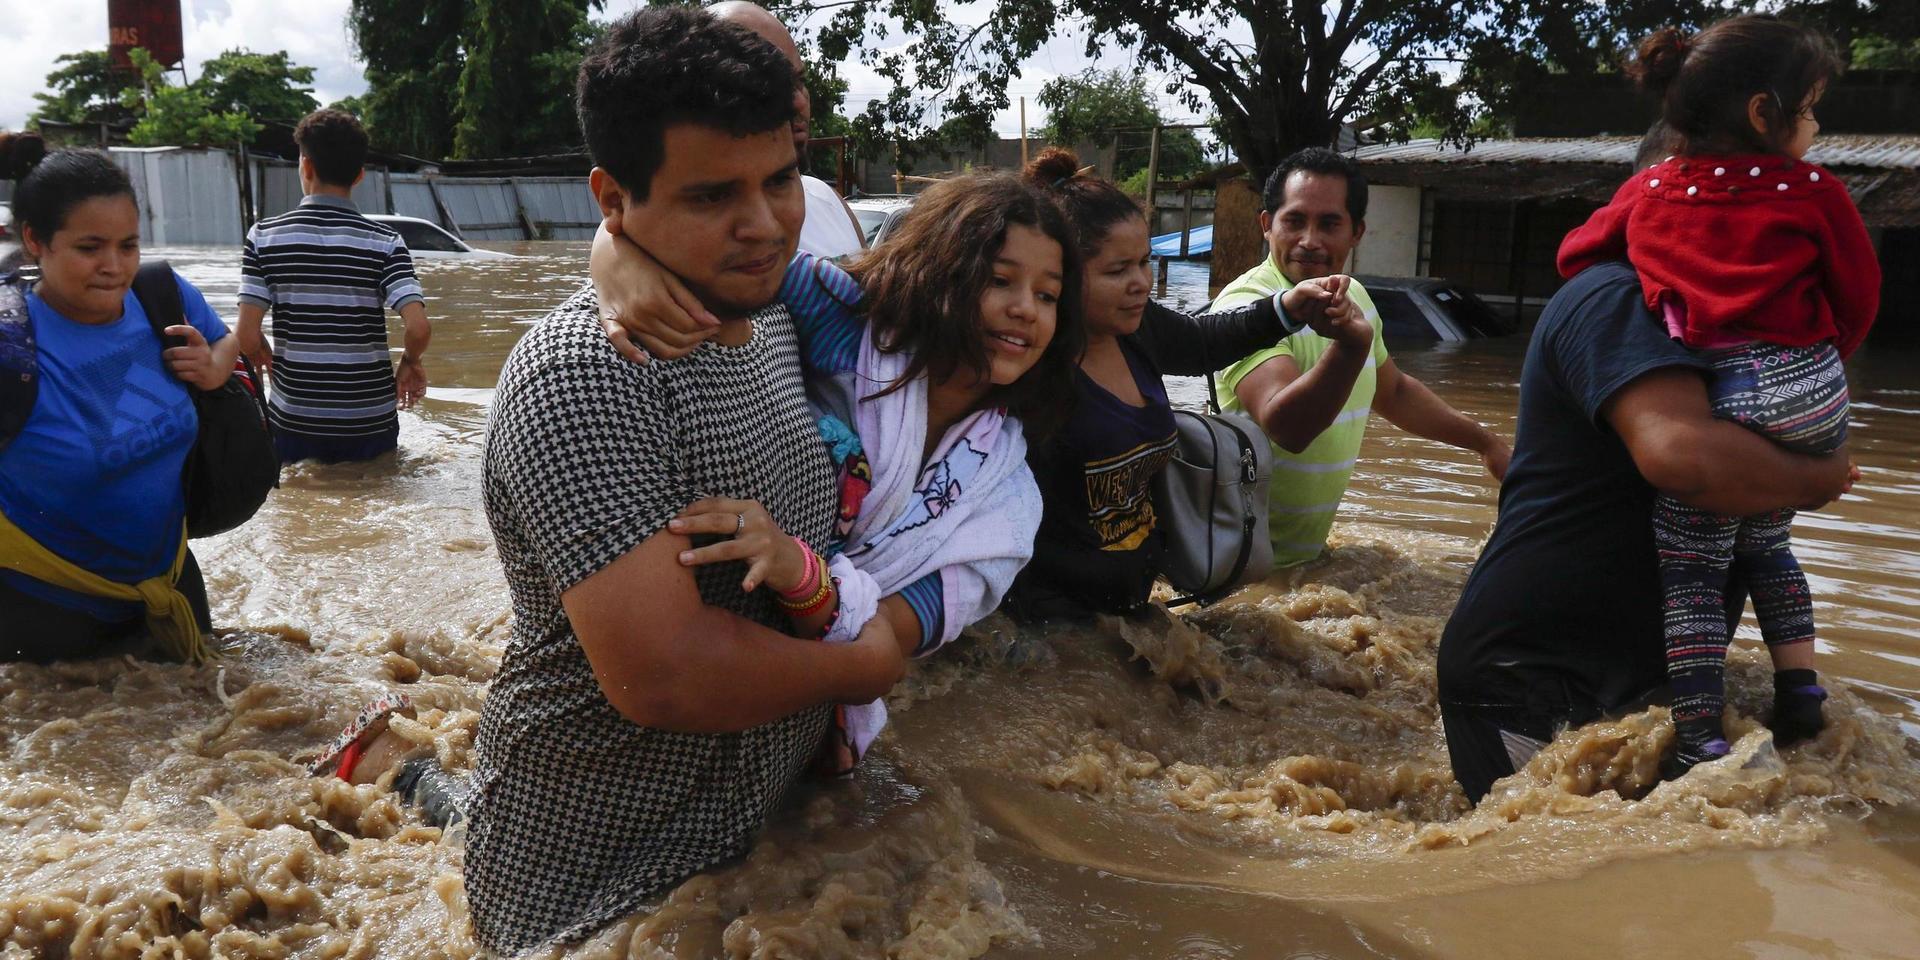 Människor flyr på översvämmade vägar i Nicaragua efter ovädret Eta för en vecka sedan.